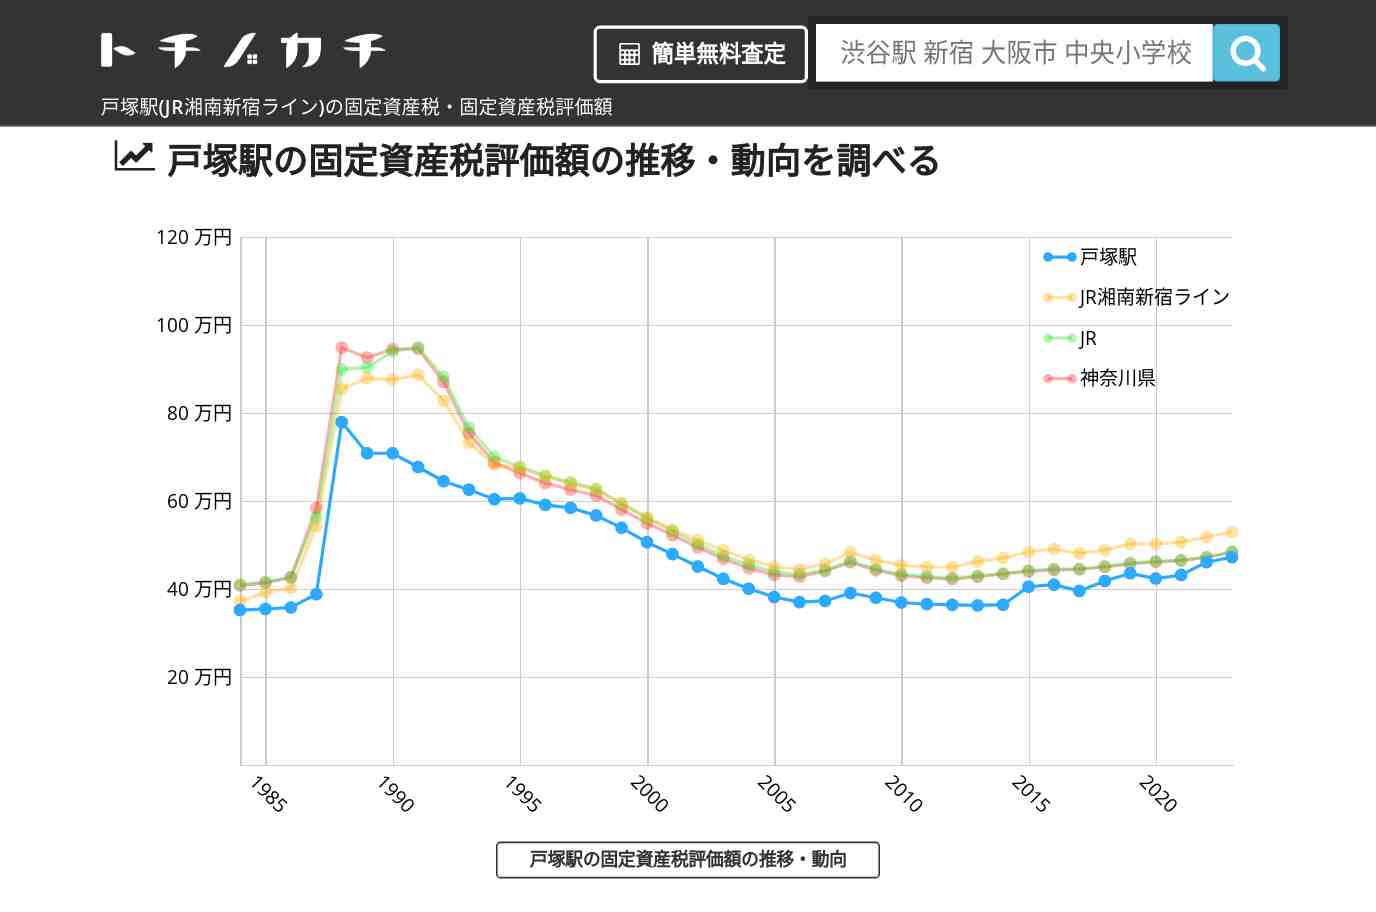 戸塚駅(JR湘南新宿ライン)の固定資産税・固定資産税評価額 | トチノカチ